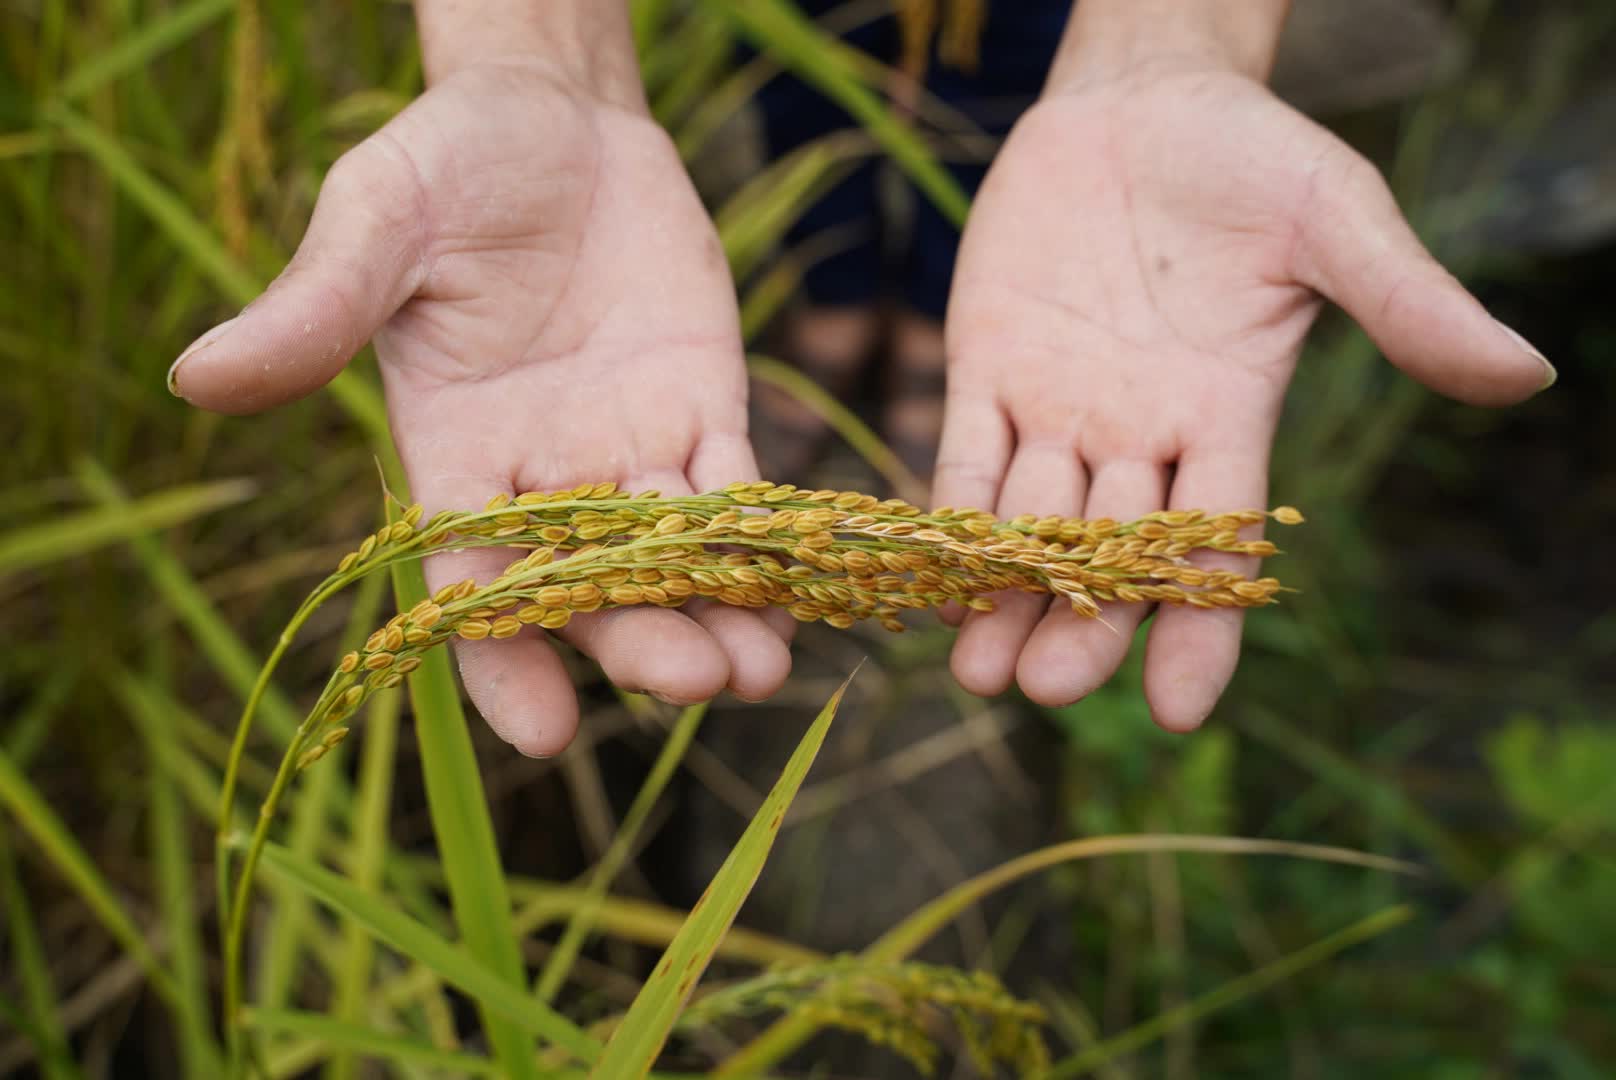 Người truyền cảm hứng làm nông nghiệp ứng phó biến đổi khí hậu ở xã bản vùng cao, đưa cây lúa địa phương thành "đặc sản 3 sao" nức tiếng - Ảnh 4.